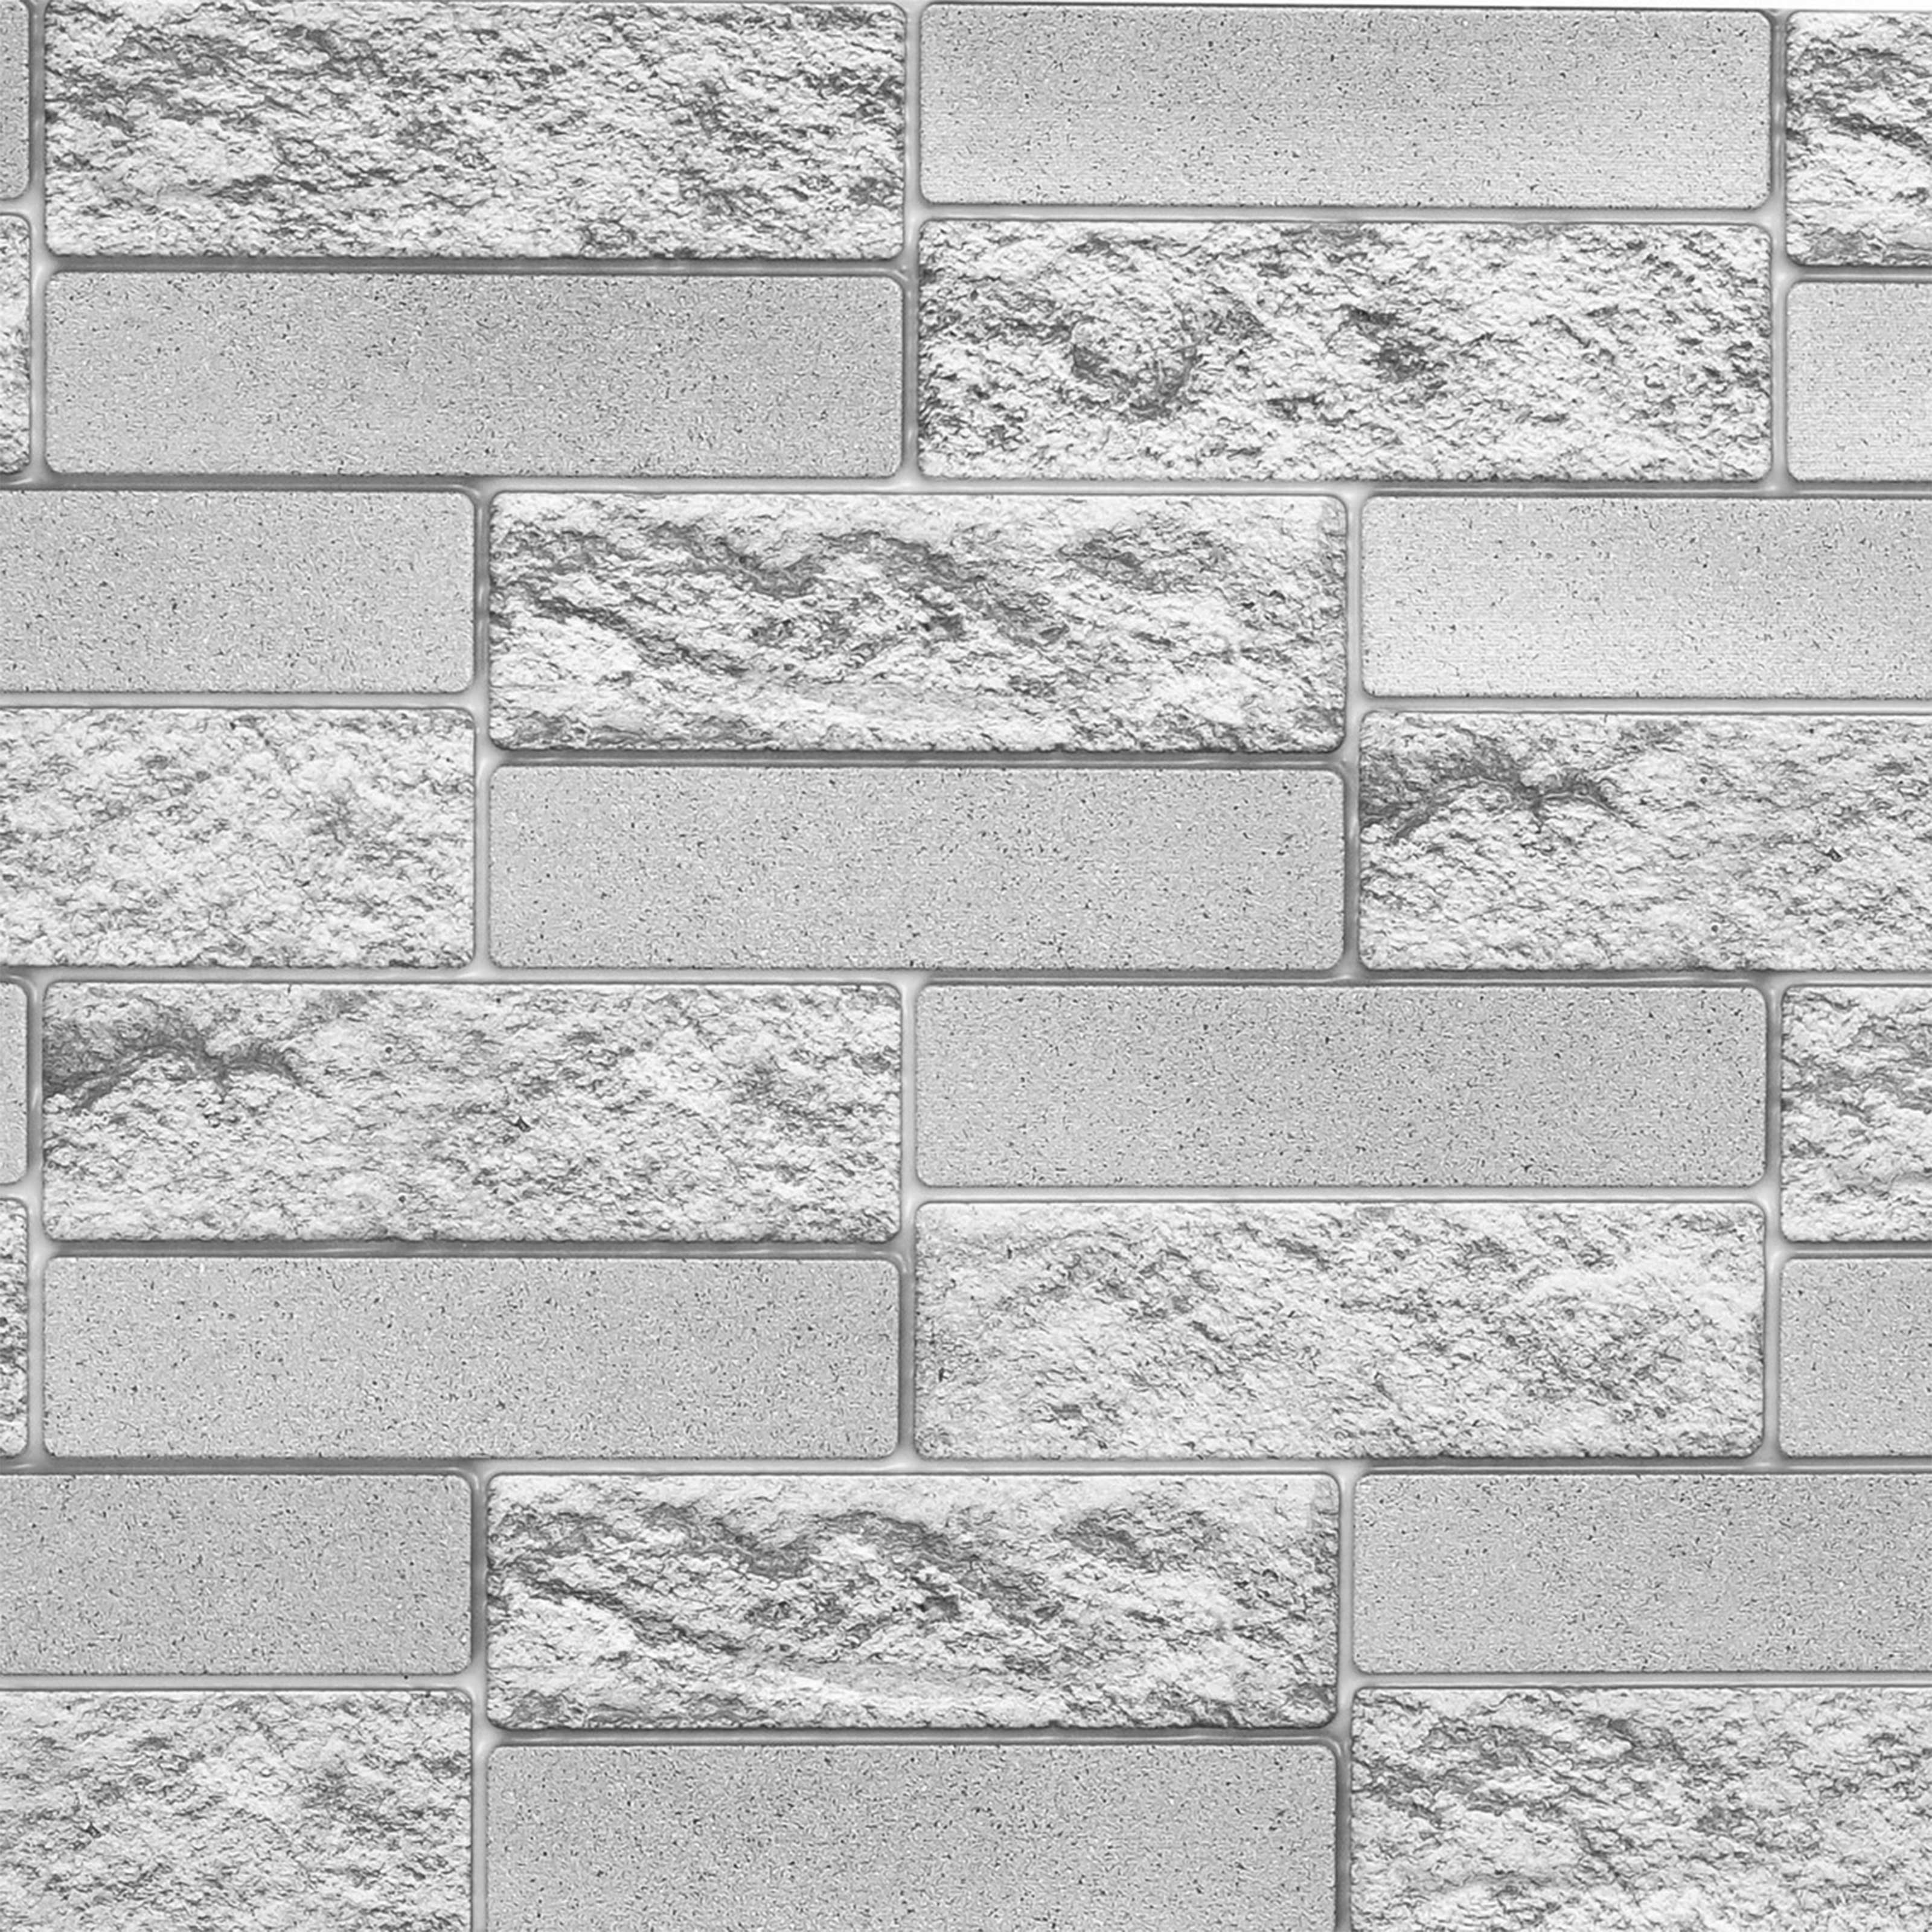 Pannelli 3D Rivestimento a parete in PVC effetto MURO DI CEMENTO Realistici e isolanti. - Eternal Parquet